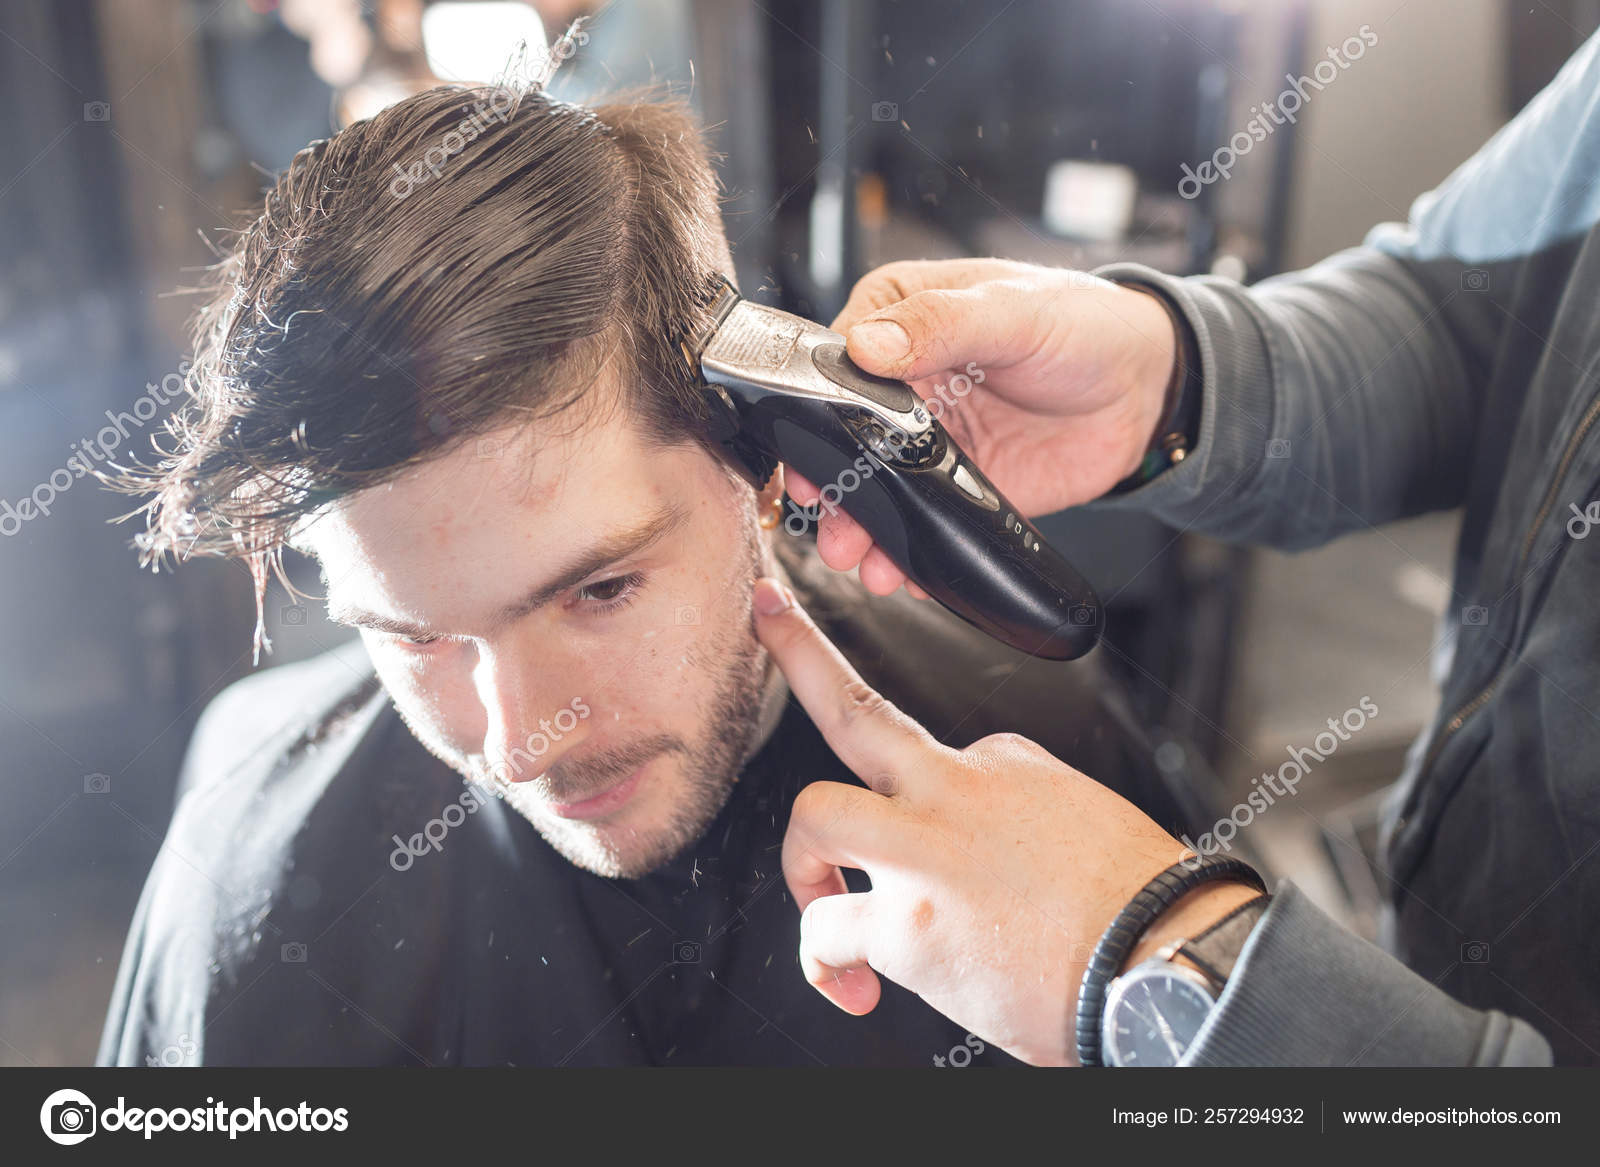 Salão. close-up de um corte de cabelo feminino, mestre em uma barbearia